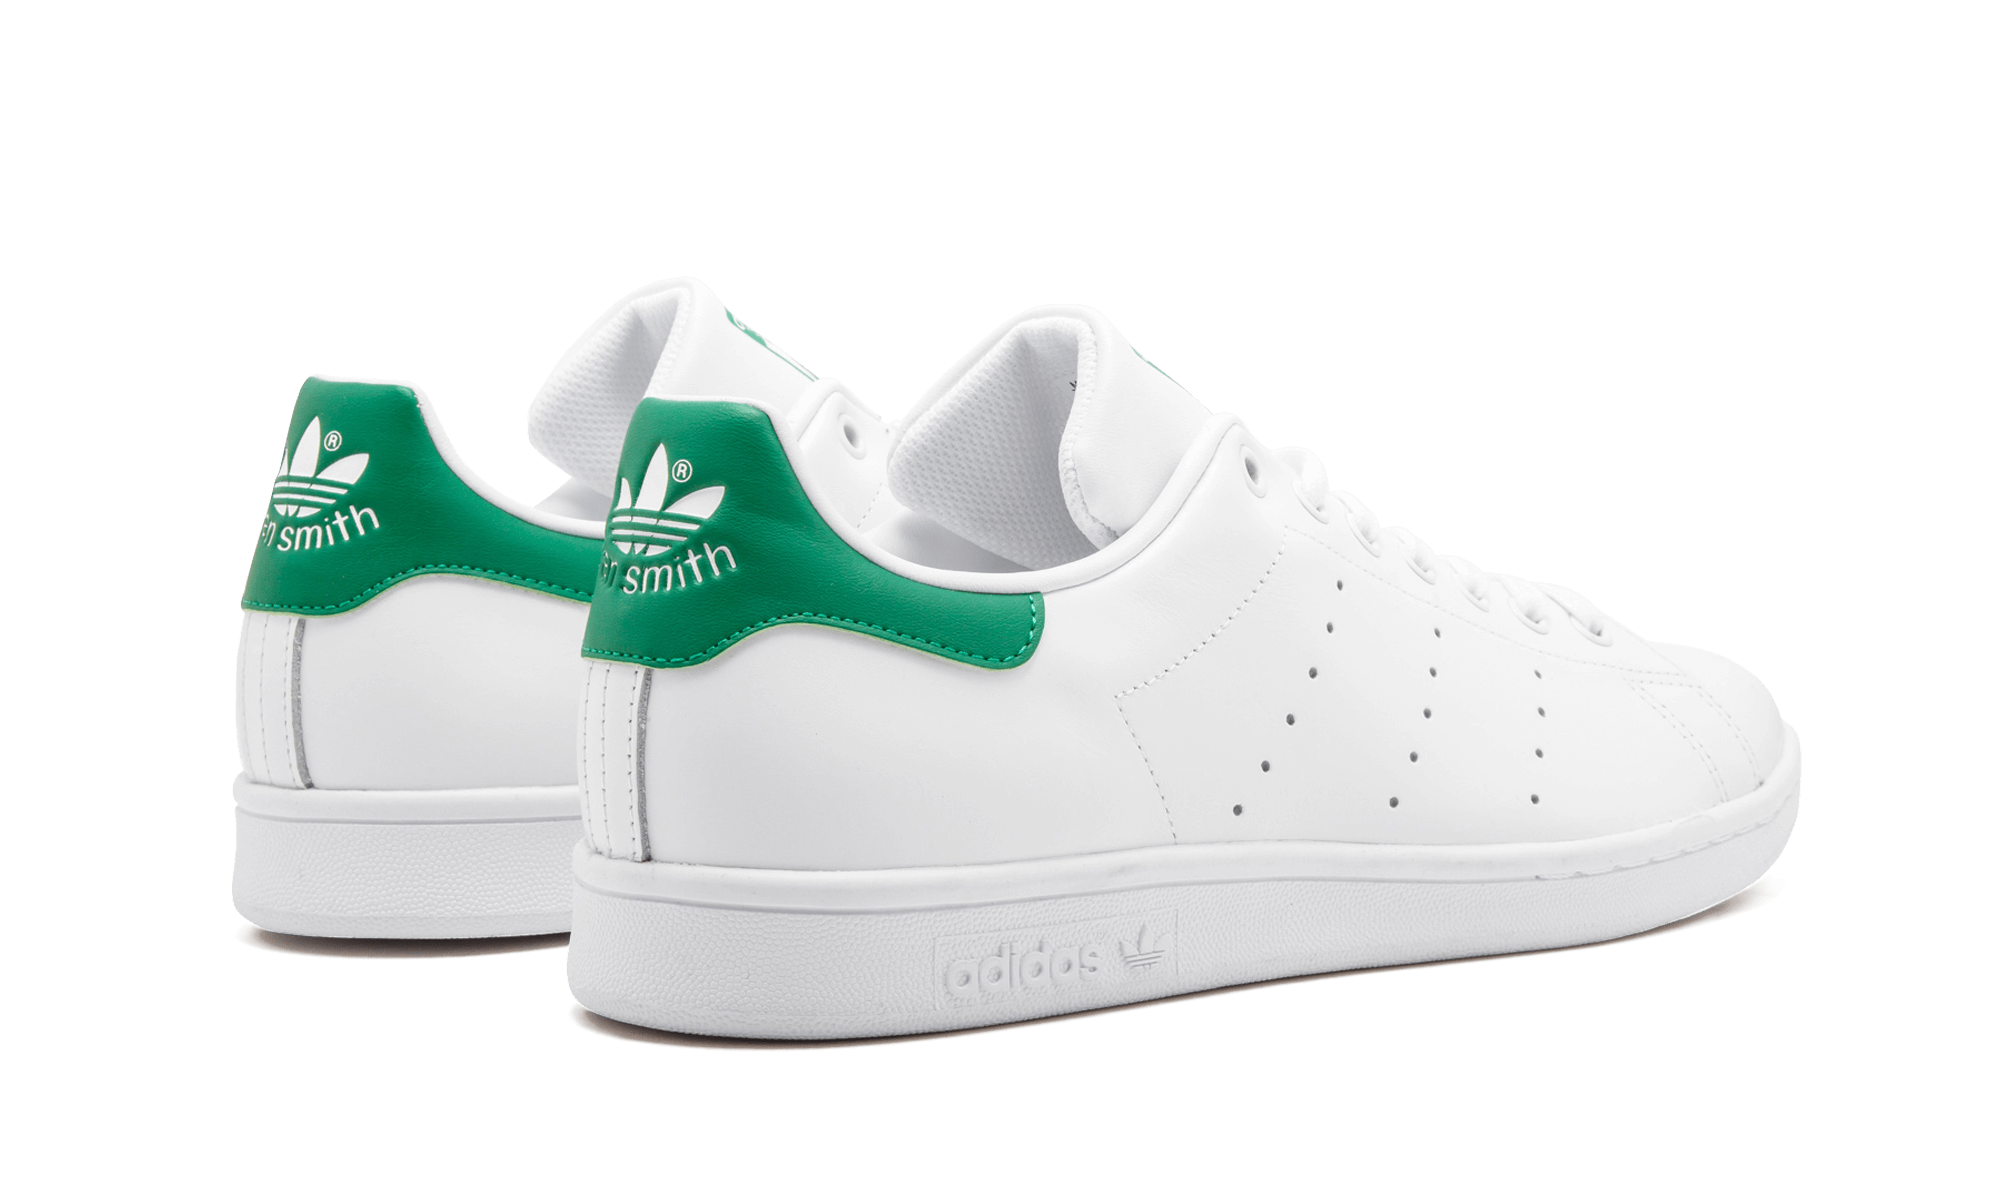 Adidas Stan smith "White/Green"